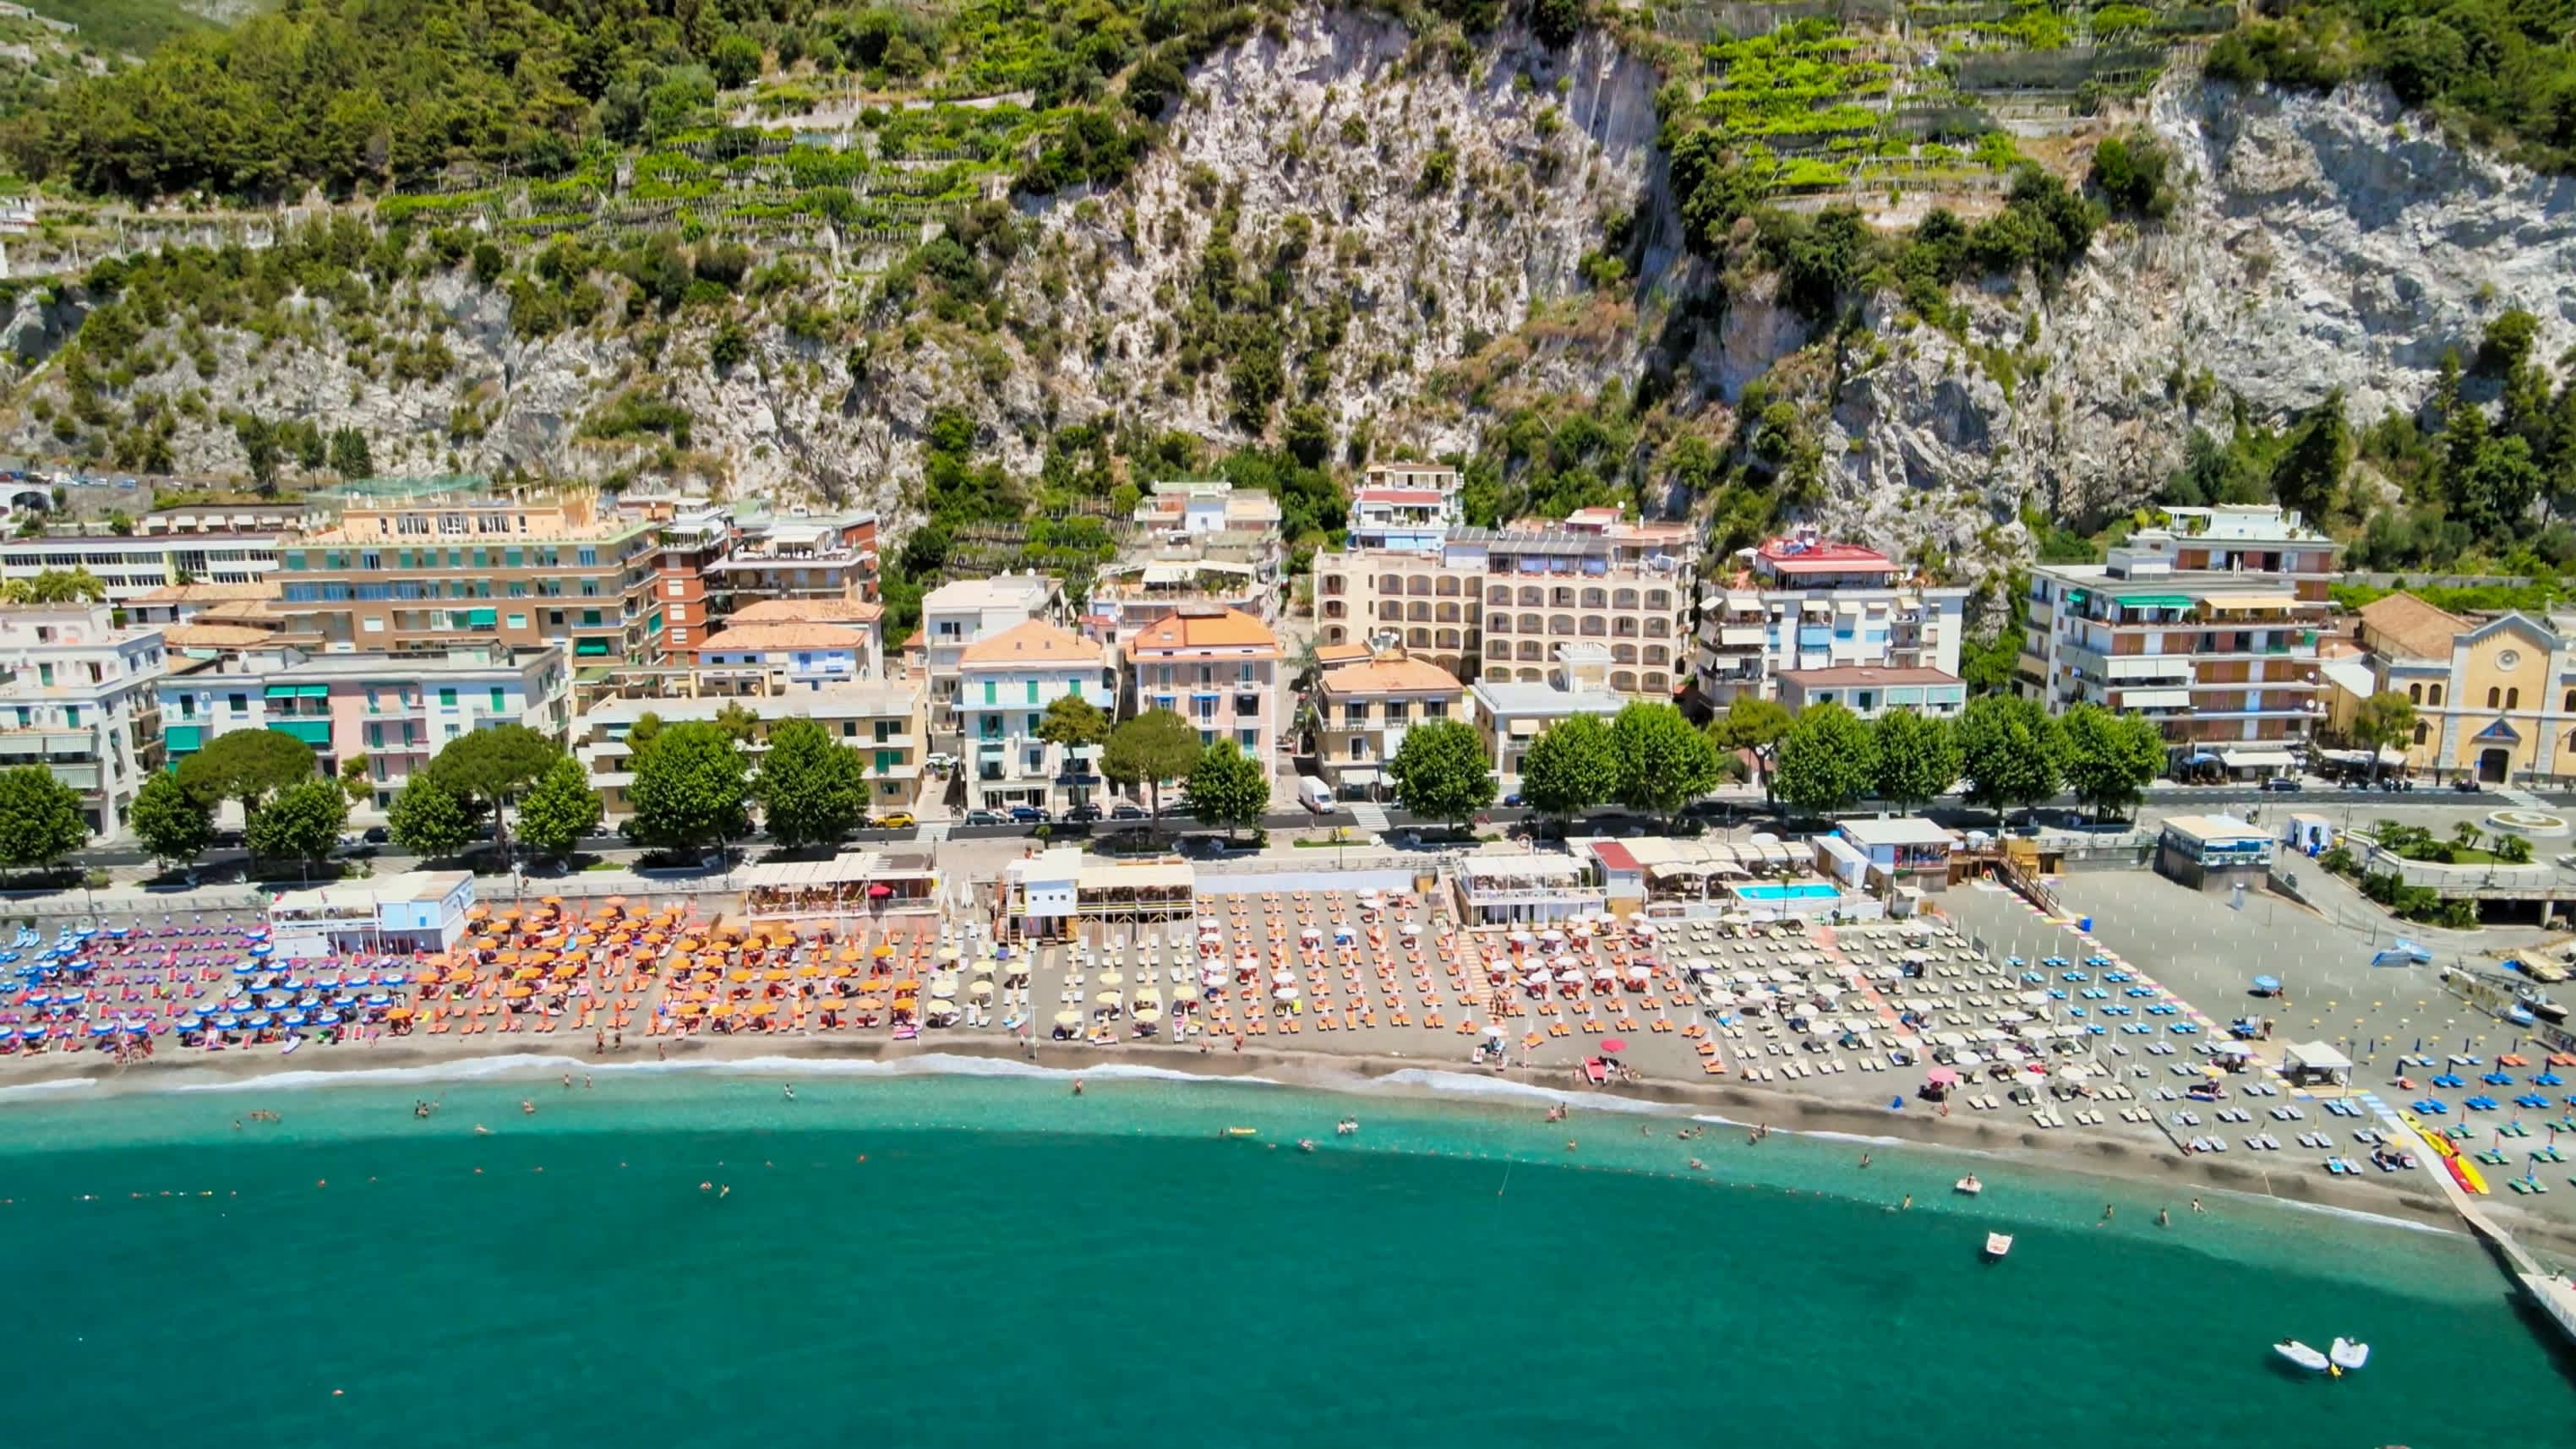 Vue aérienne de Maiori Beach avec ses parasols colorés et sa longue plage, sur la côte Amalfitaine, en Italie.